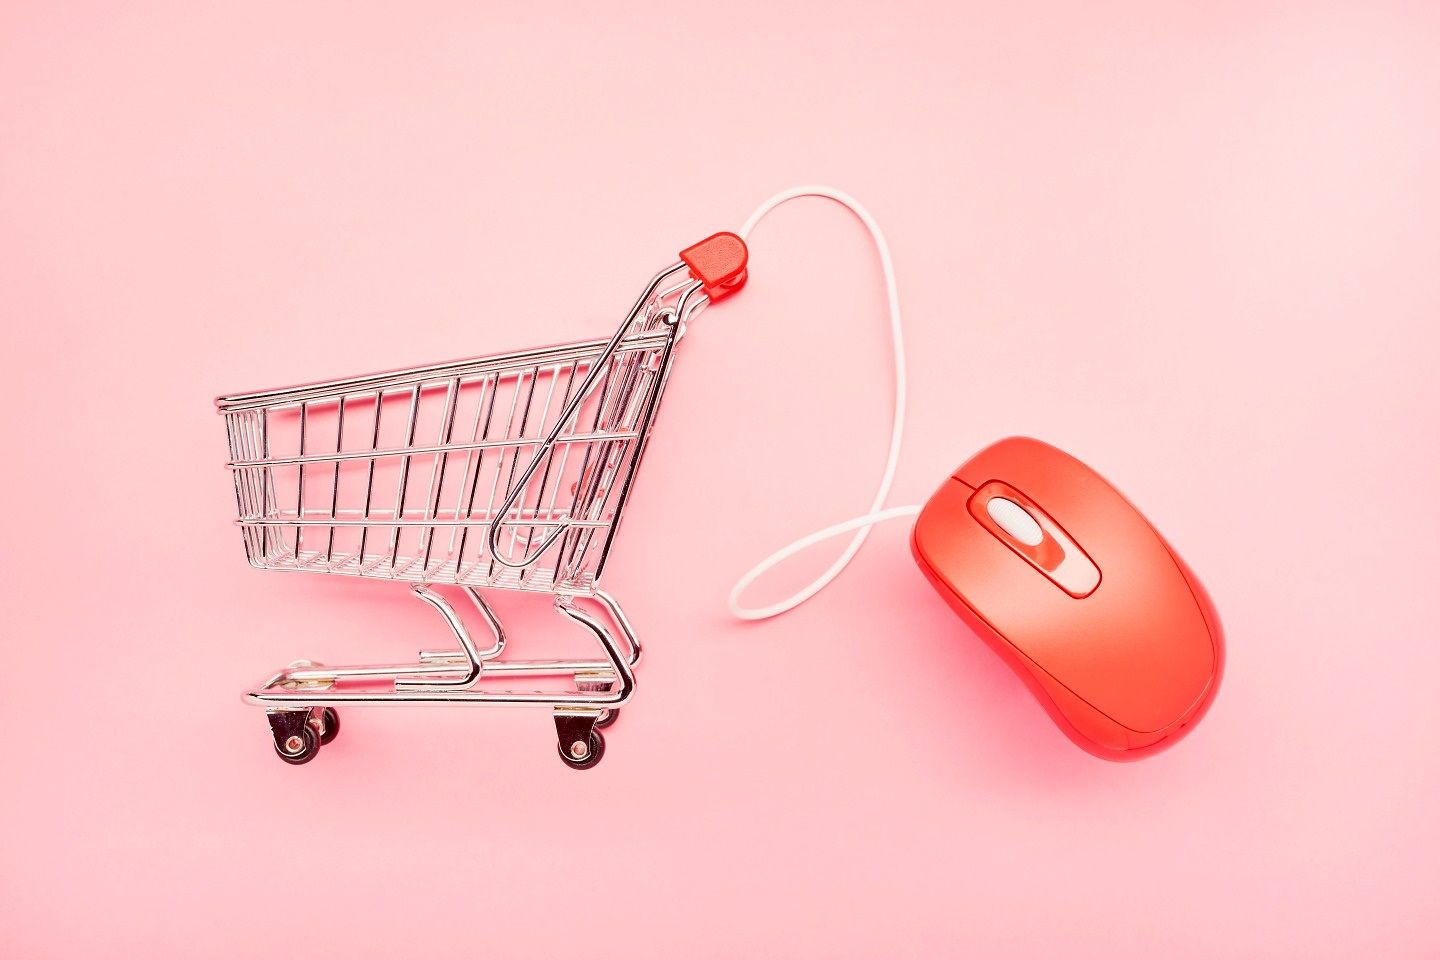 Stilleben eines kleinen Einkaufswagens und einer roten Computermaus auf rosa Hintergrund.